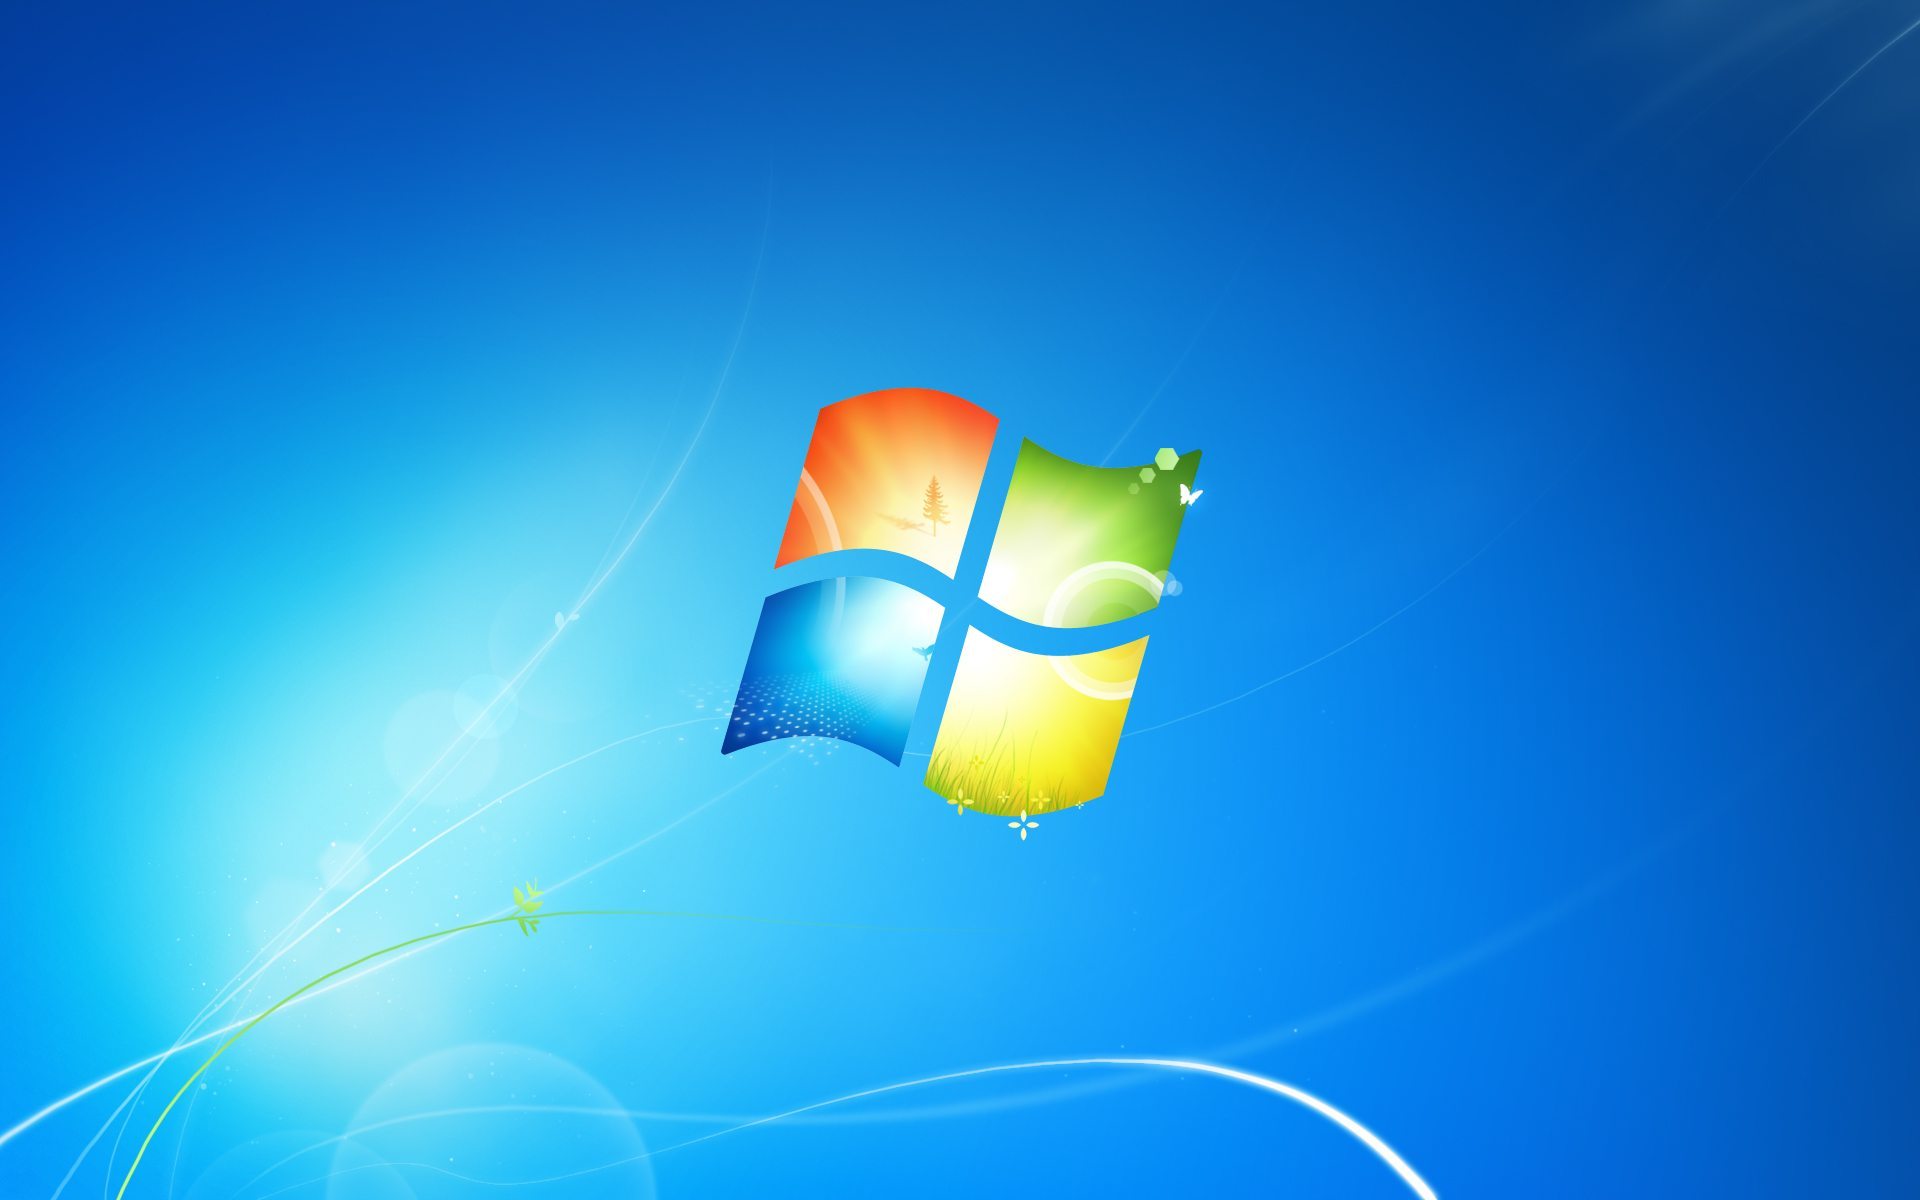 Tải hình nền chính thức Windows 7 miễn phí để thỏa mãn nhu cầu làm việc của bạn. Được thiết kế đặc biệt để phù hợp với mọi cỡ màn hình máy tính, các bức hình nền chính thức Windows 7 mang đến cho bạn một trải nghiệm tinh tế và đáng nhớ.